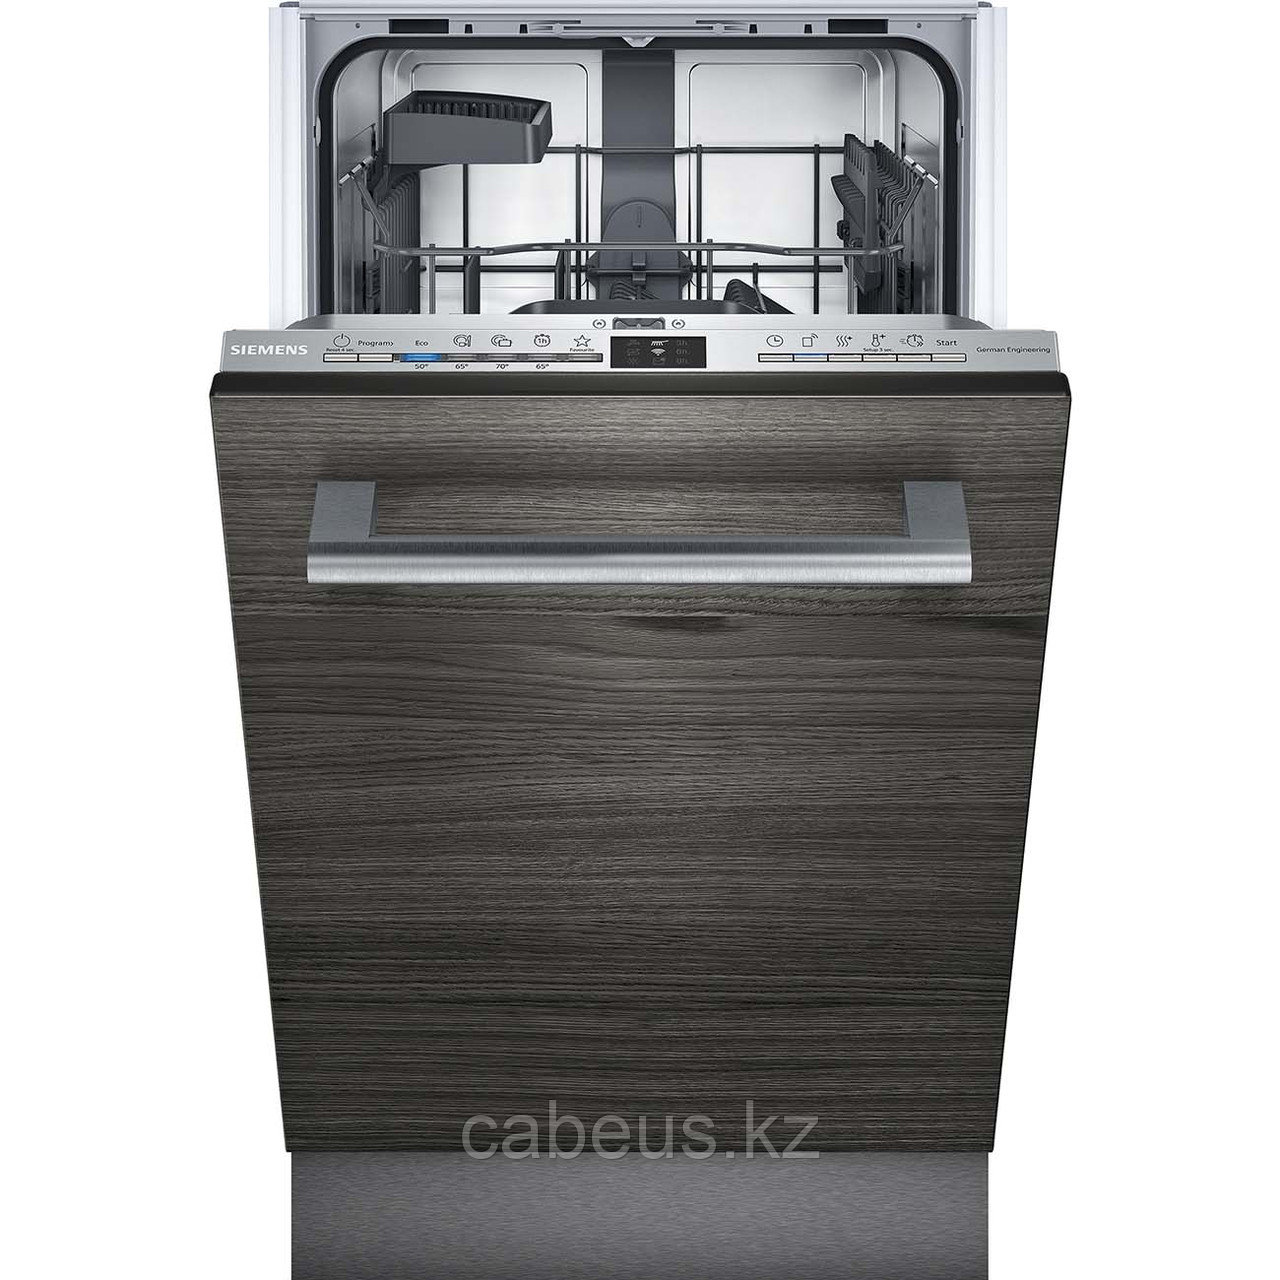 Встраиваемая посудомоечная машина 45 см Siemens iQ100 Hygiene Dry SR61HX2IKR